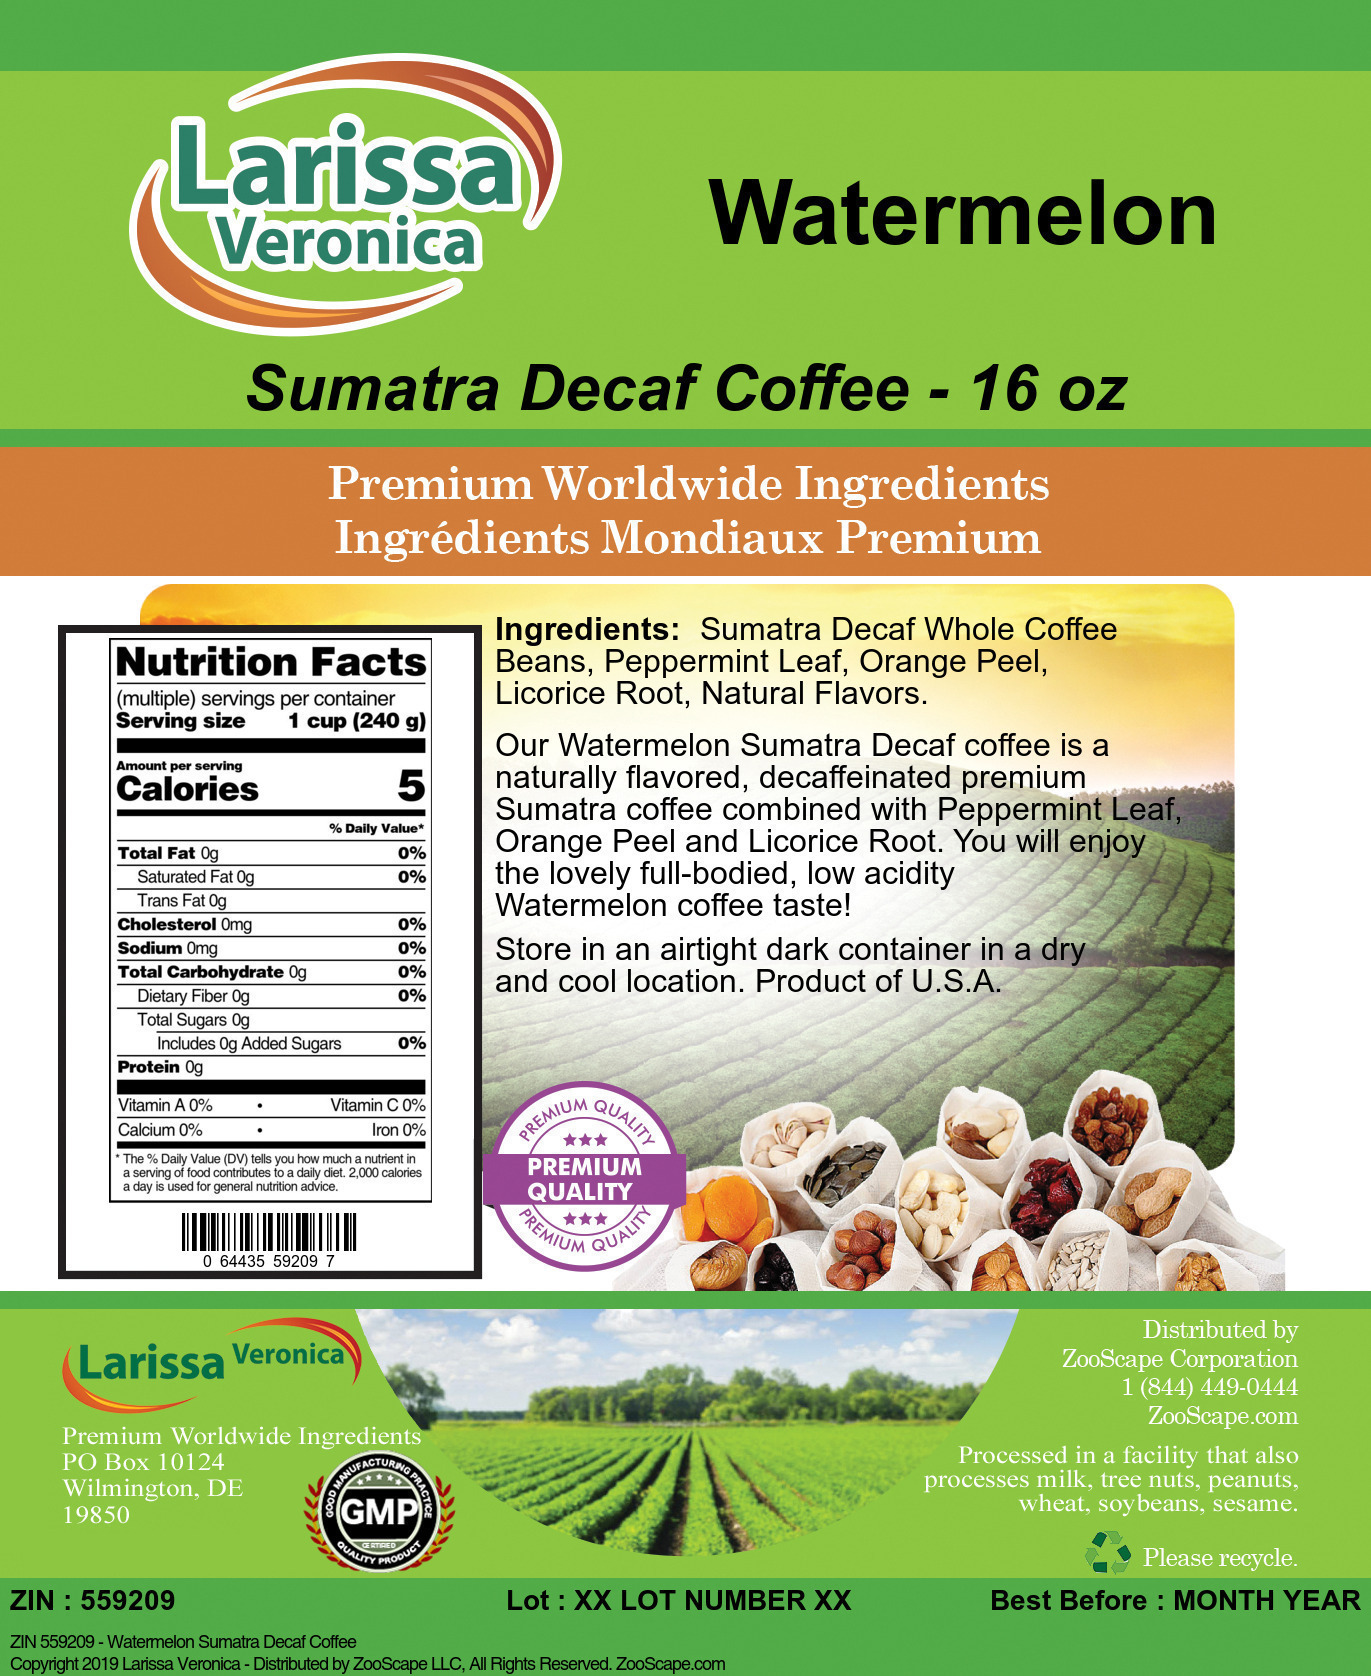 Watermelon Sumatra Decaf Coffee - Label